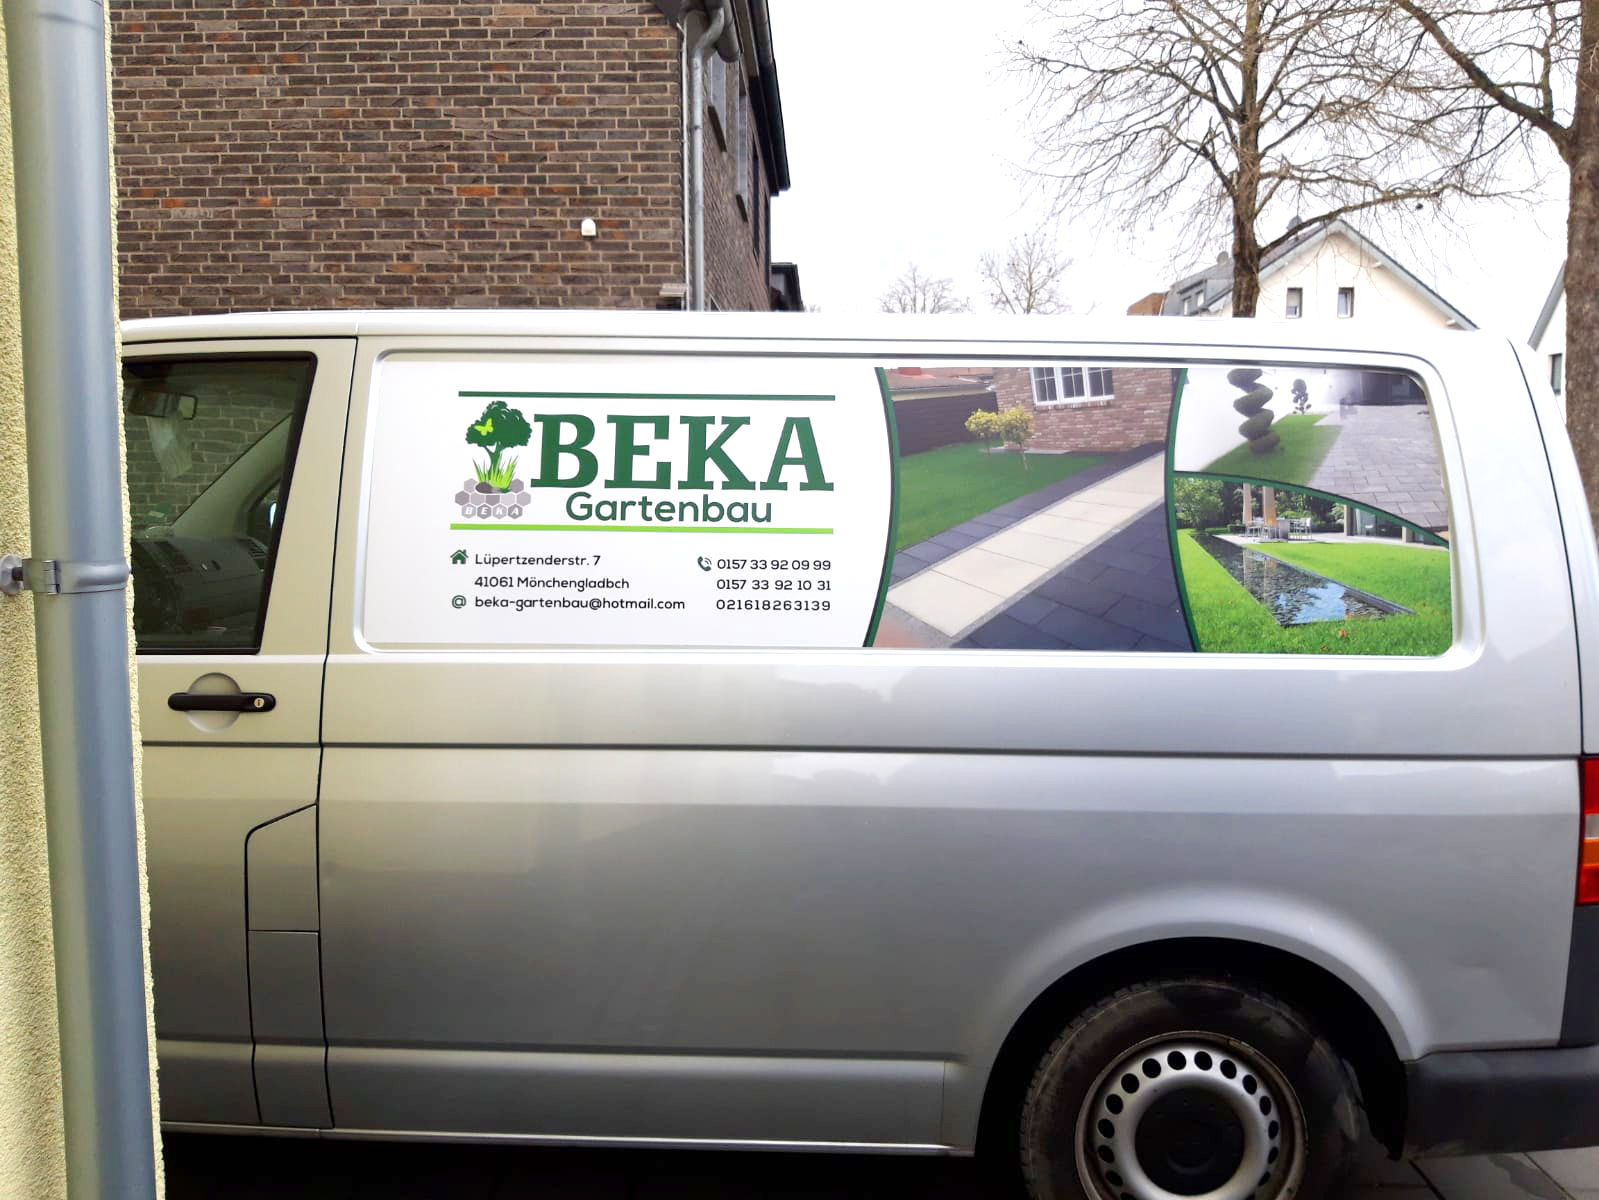 BEKA Garten, ihr Partner im Gartenbau in Mönchengladbach und Umgebung